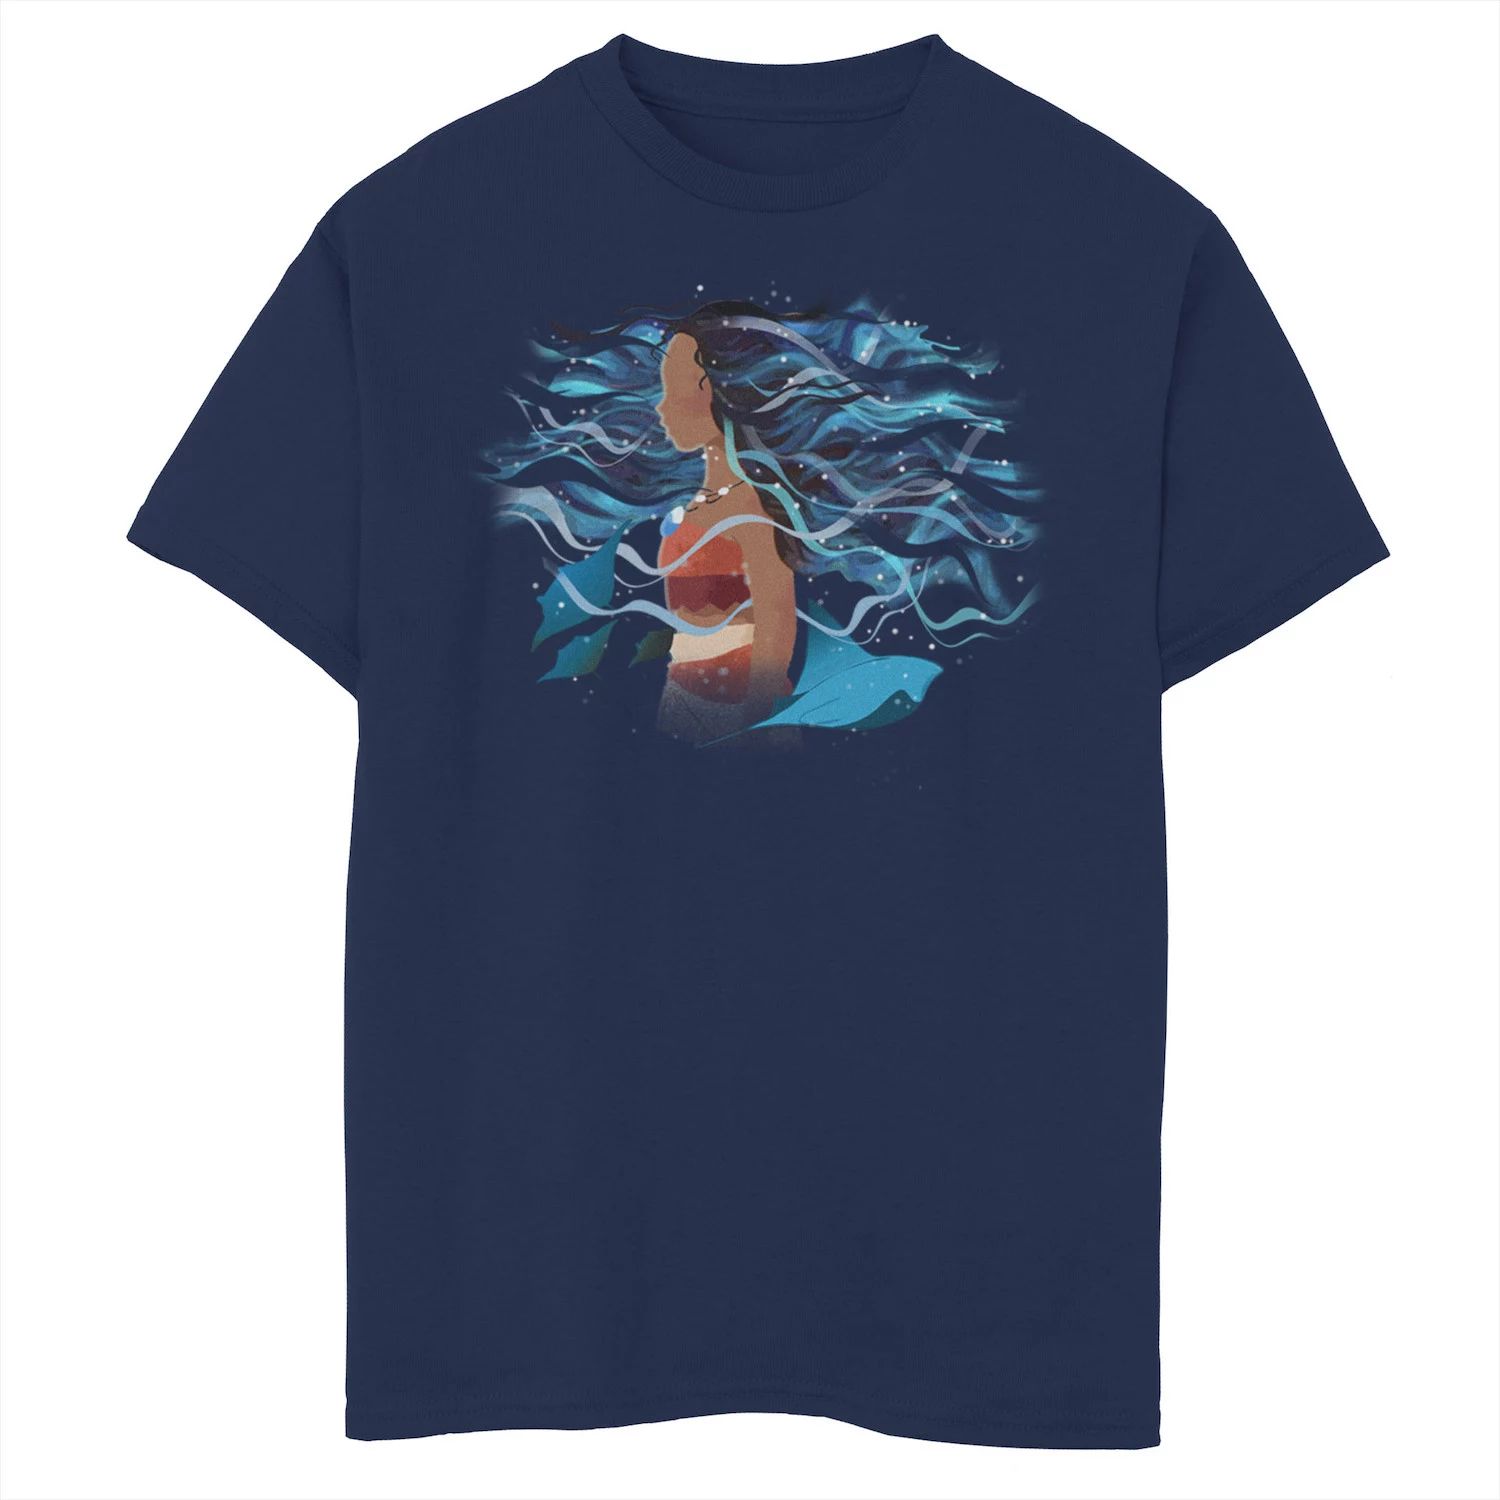 Футболка Disney's Moana Boys 8–20 с рисунком Ocean Artsy Disney футболка disney s moana boys 8–20 the ocean connects us с графическим рисунком кораллового цвета licensed character